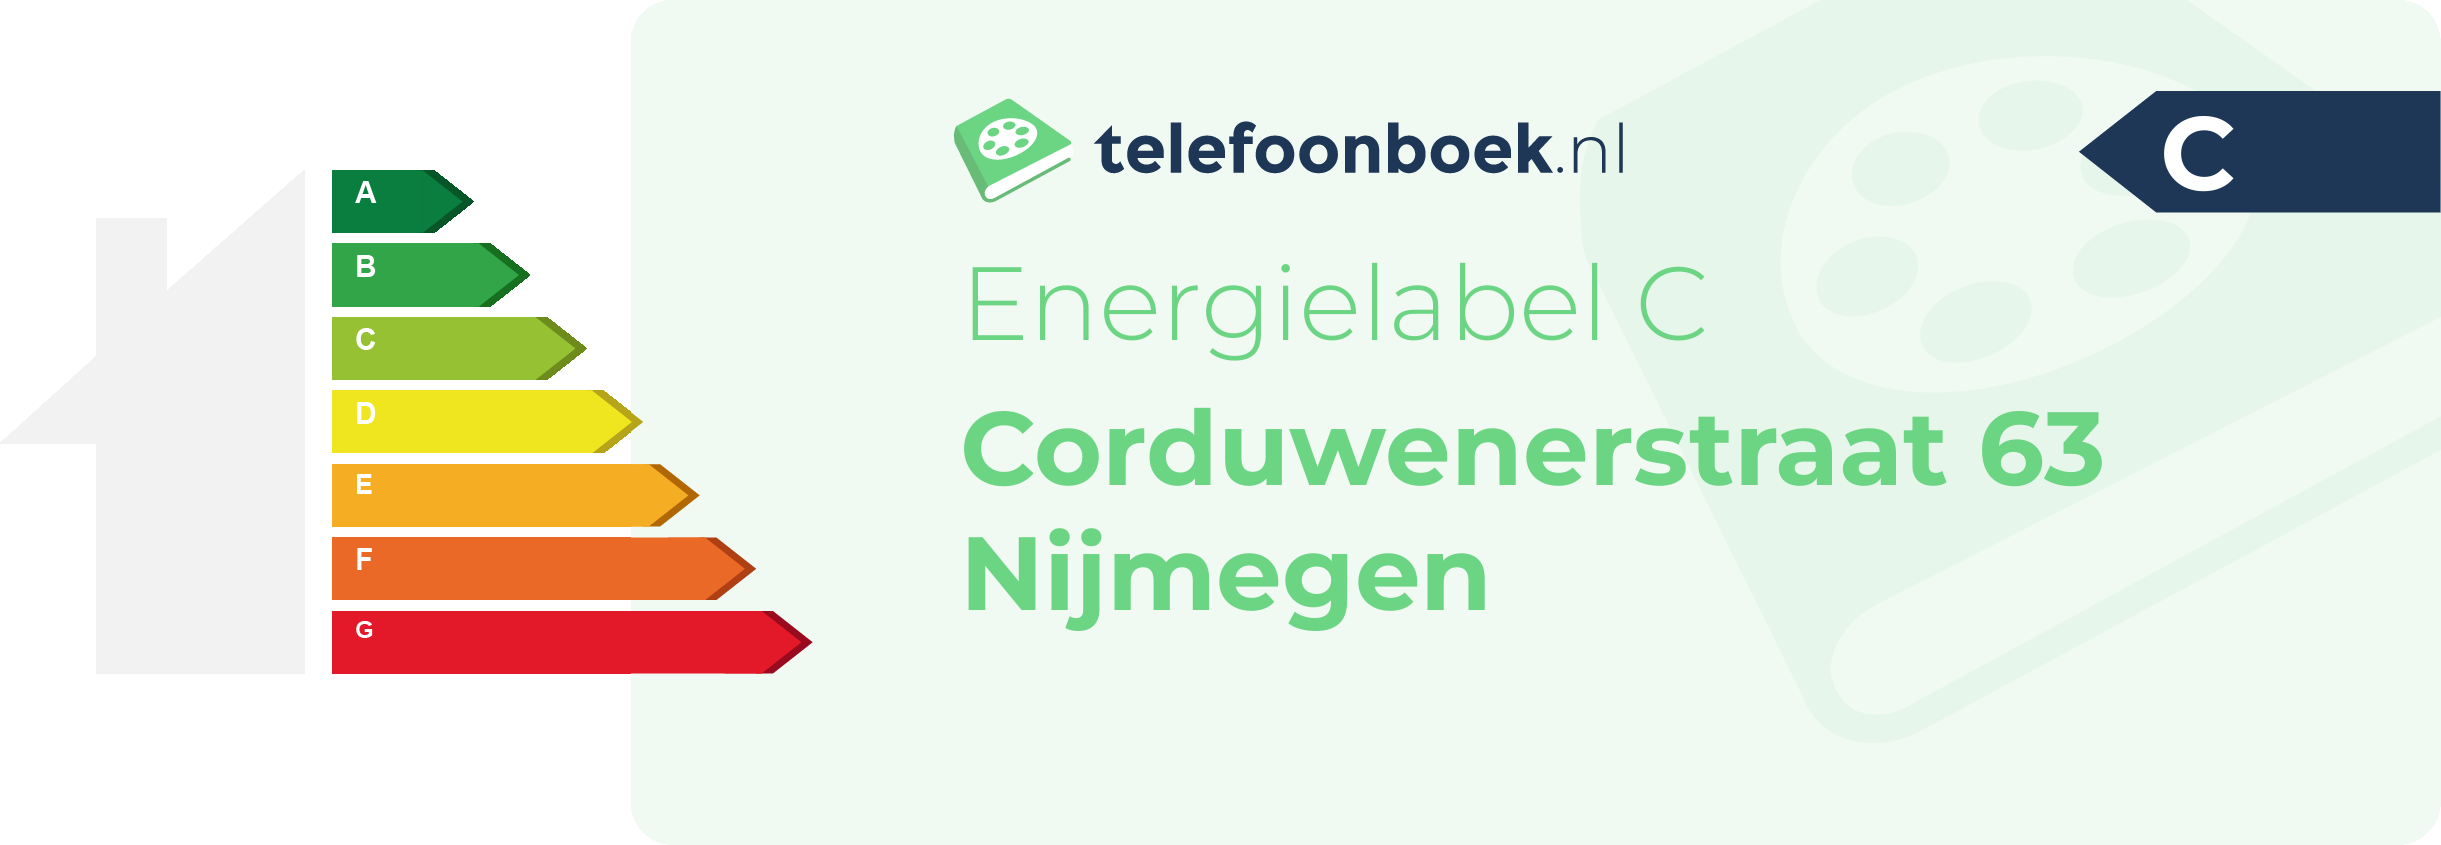 Energielabel Corduwenerstraat 63 Nijmegen